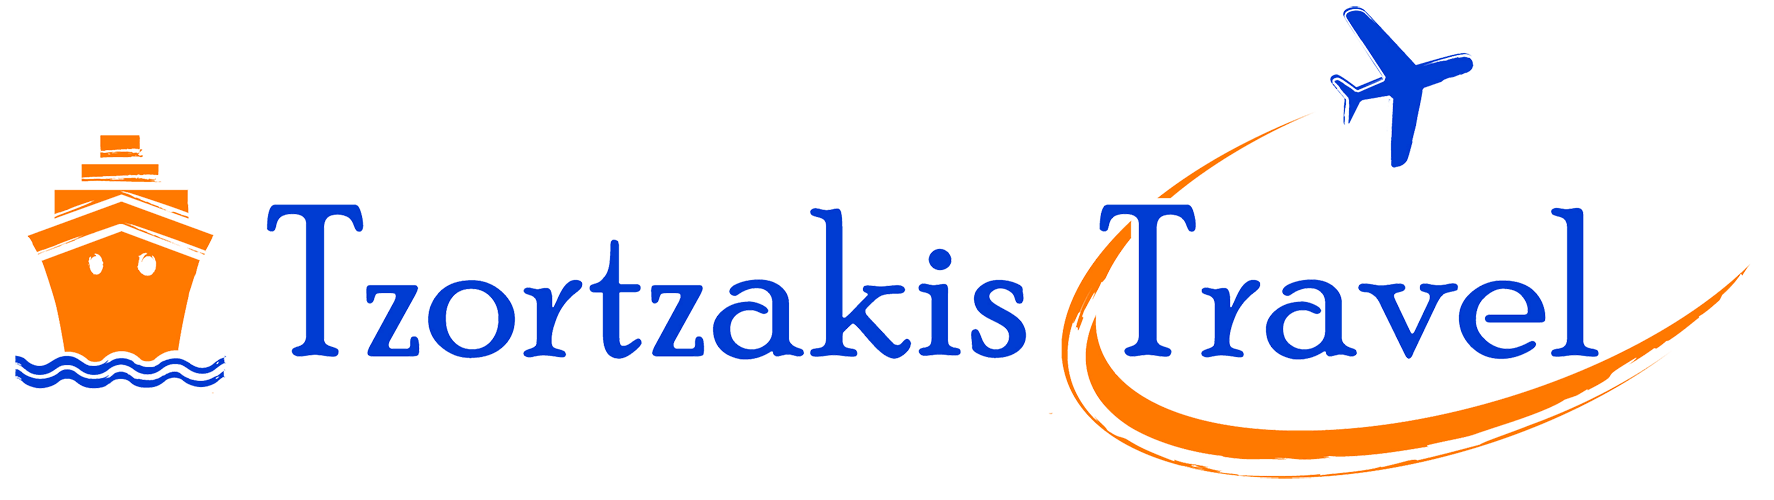 Tzortzakis Travel company is one of the TEDxSitia 2022 sponsors.